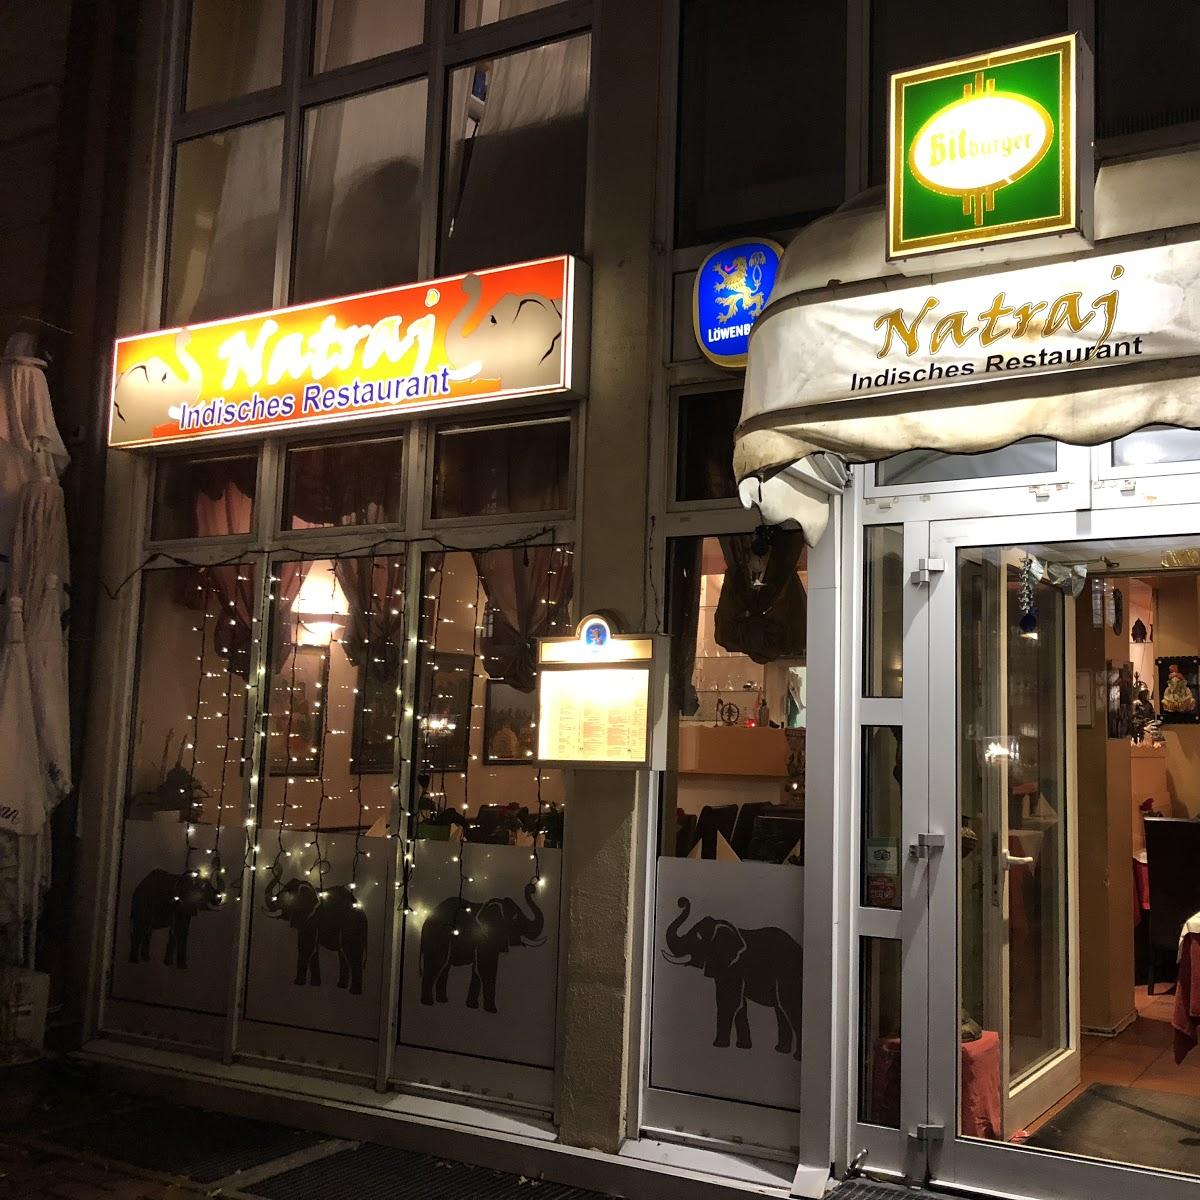 Restaurant "Natraj" in München